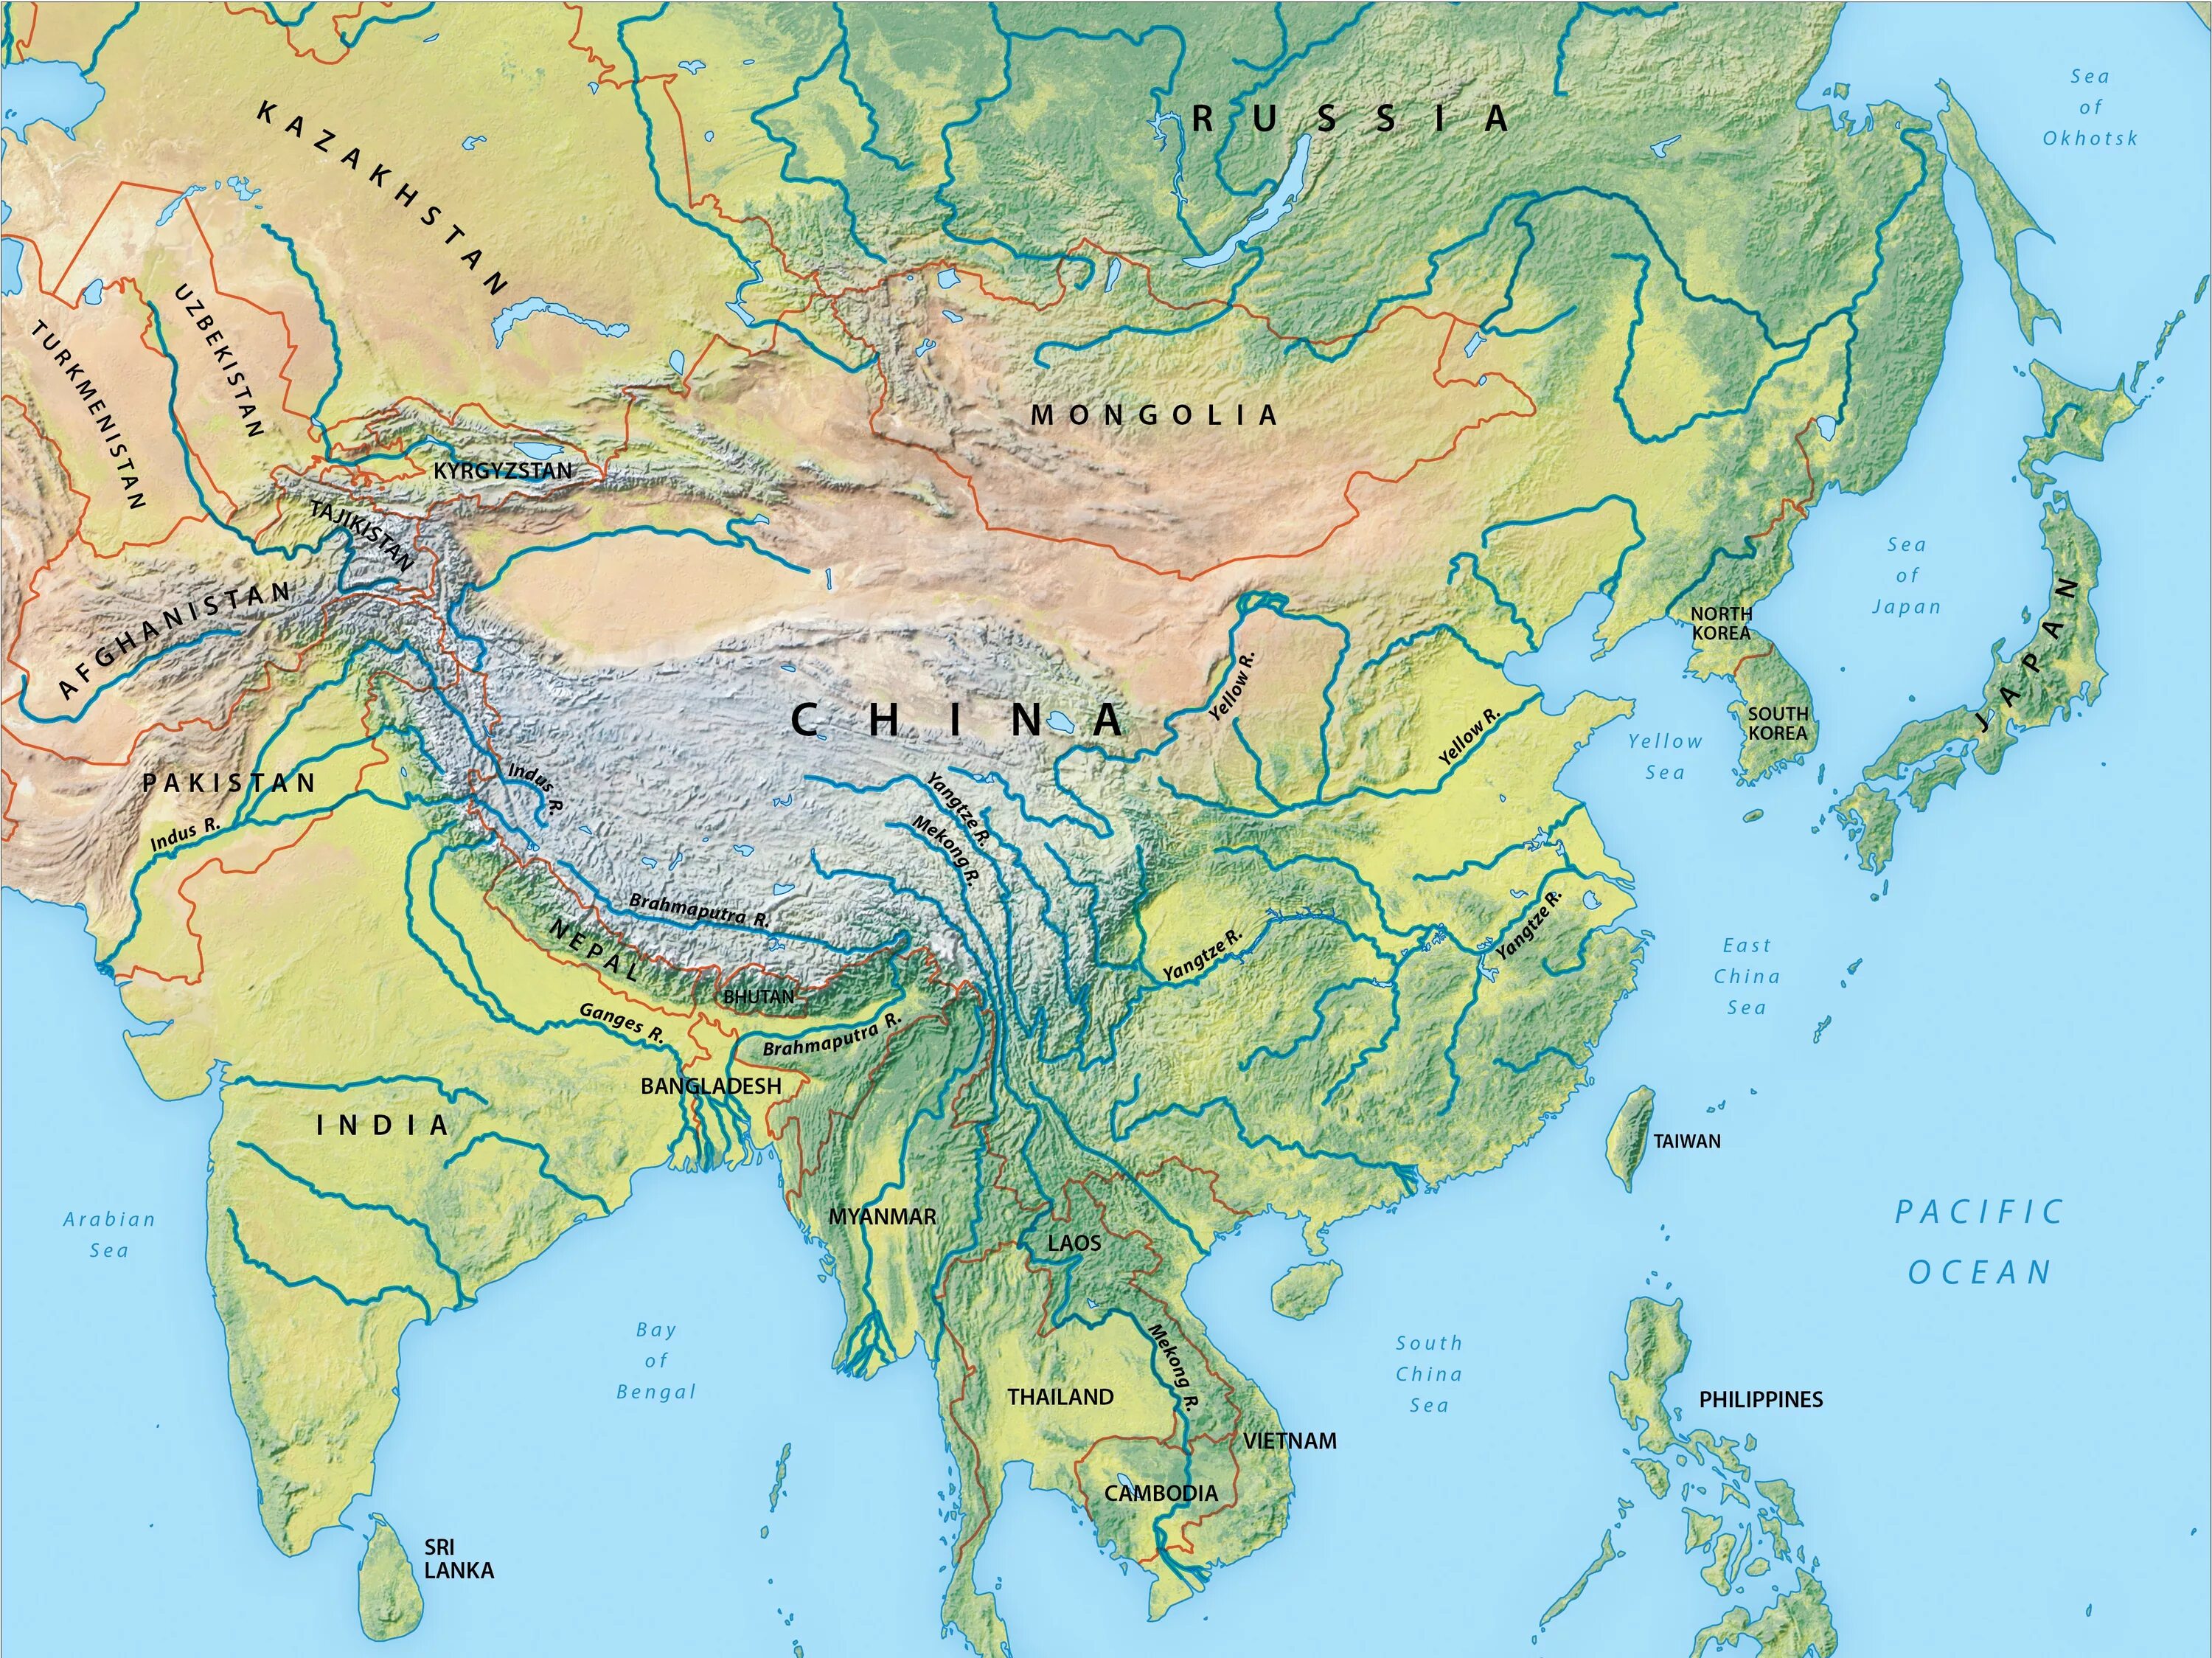 Реки Азии на карте. Крупнейшие реки Азии на карте. Реки зарубежной Азии. Зарубежная Азия реки и озера на карте. Назовите реки азии